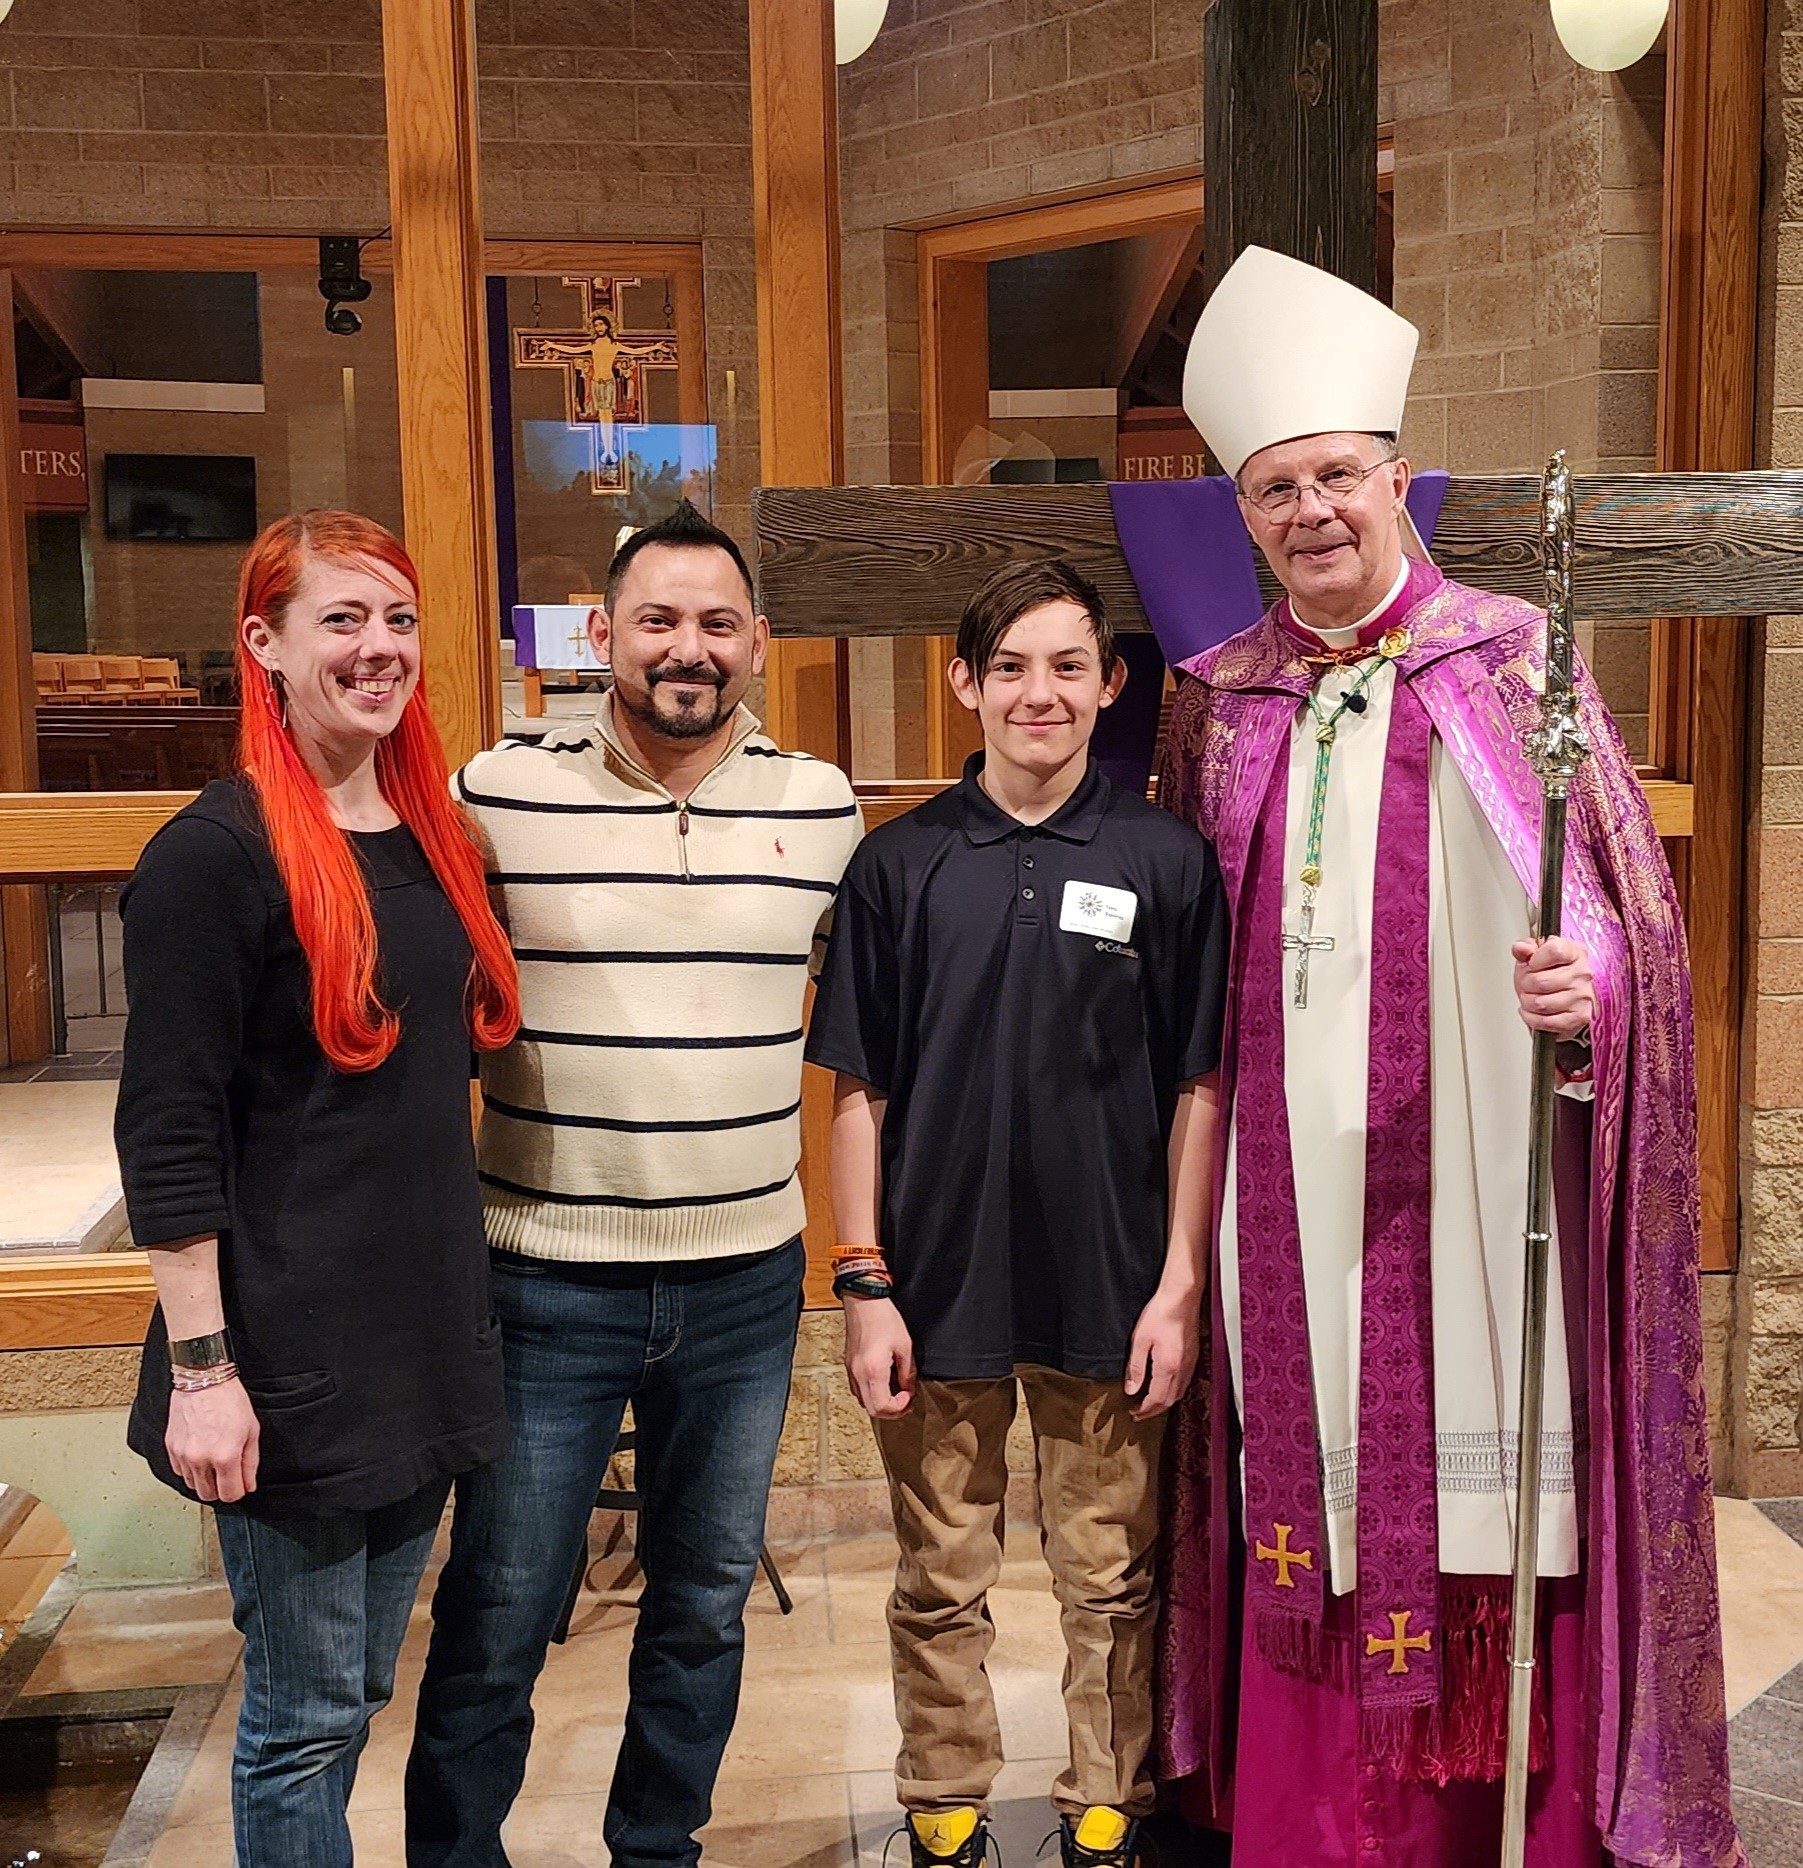 Tony and Celestino meet Bishop William Joensen at Rite 